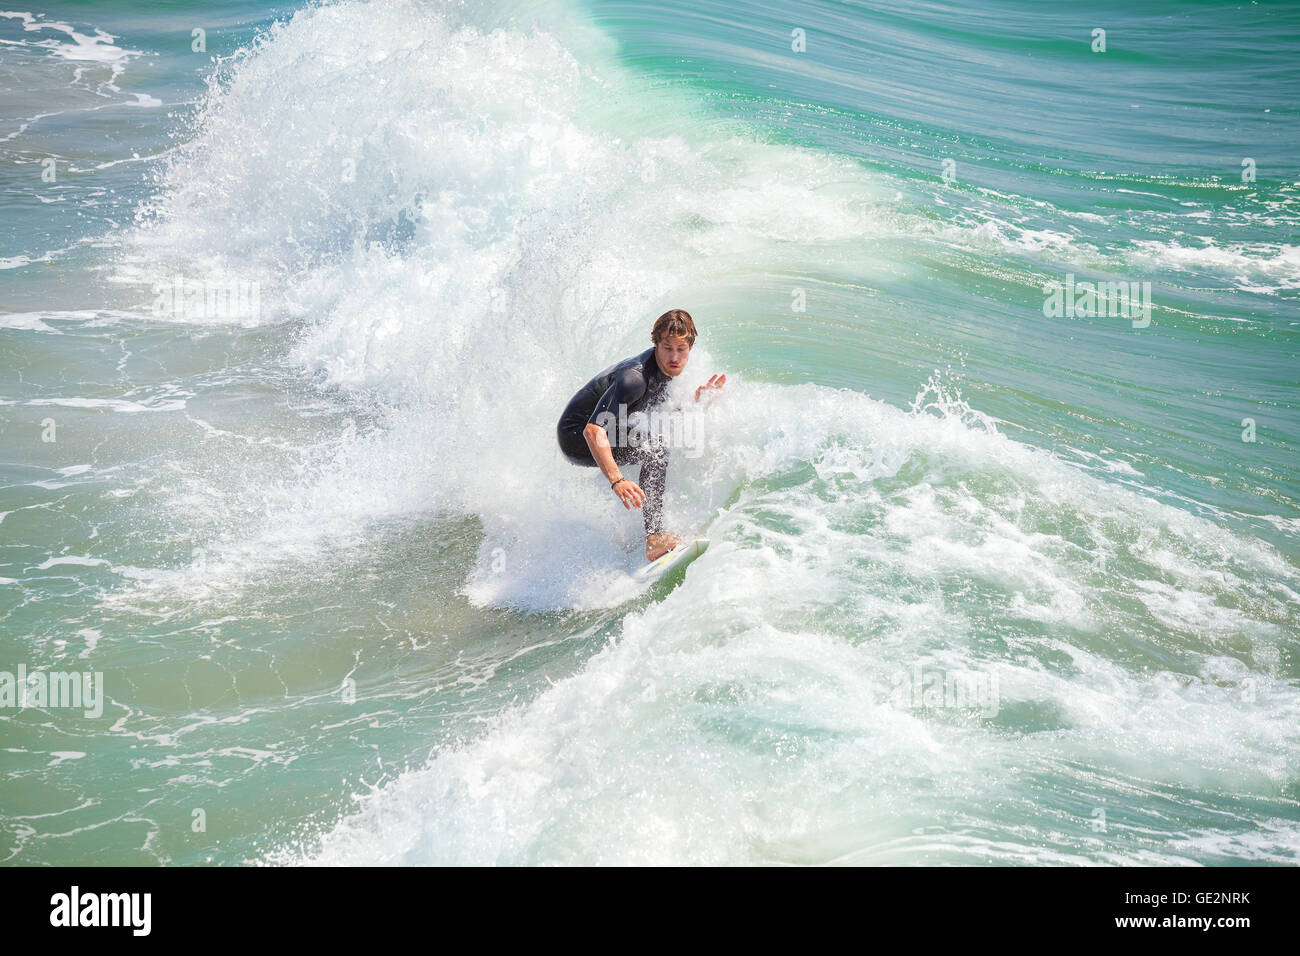 Venice Beach, Los Angeles, USA - 22 août 2015 : Surfer la vague d'équitation sur une belle journée ensoleillée. Banque D'Images